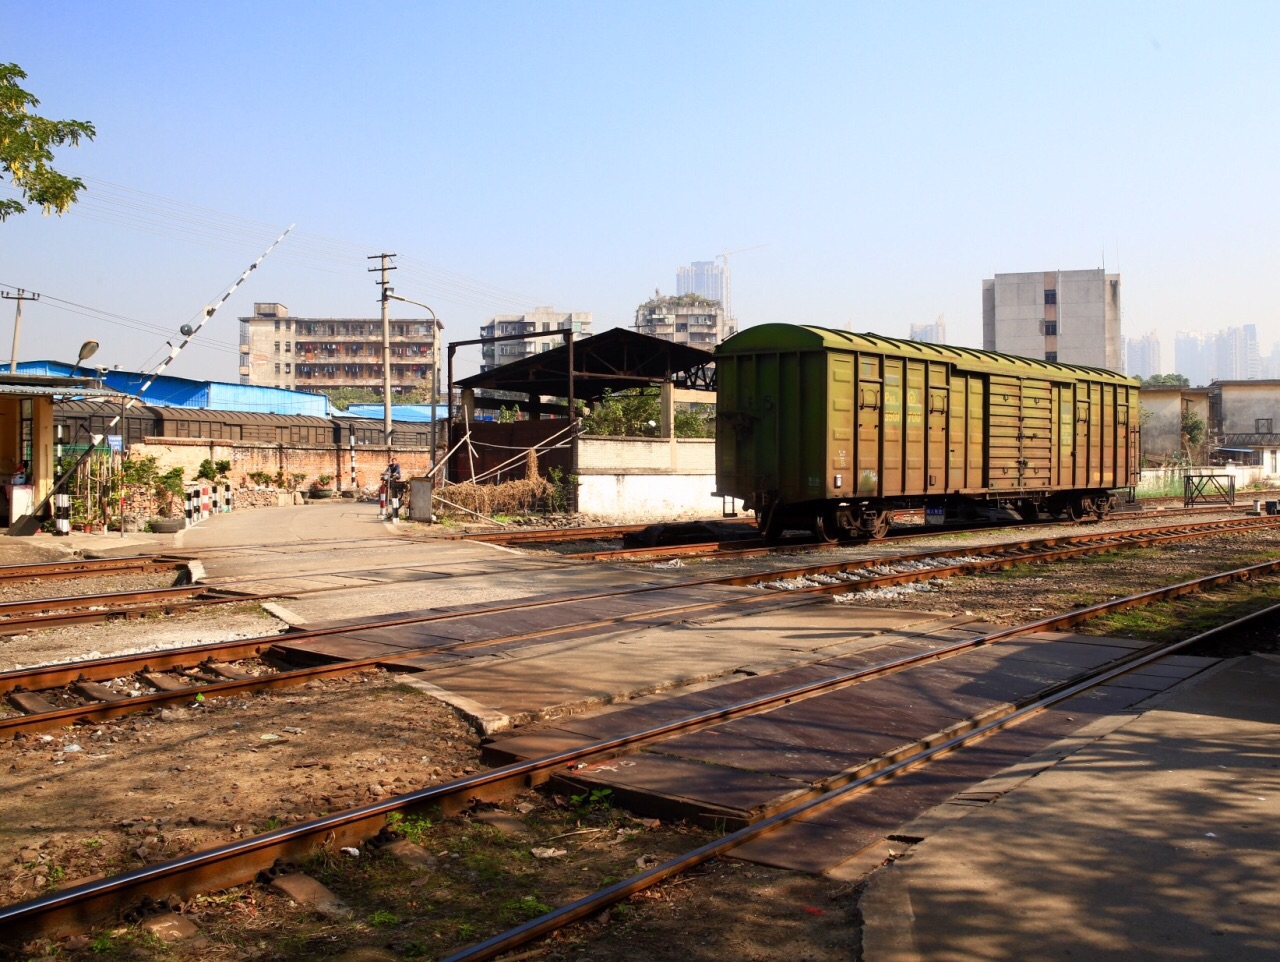 芳村石围塘火车站图片